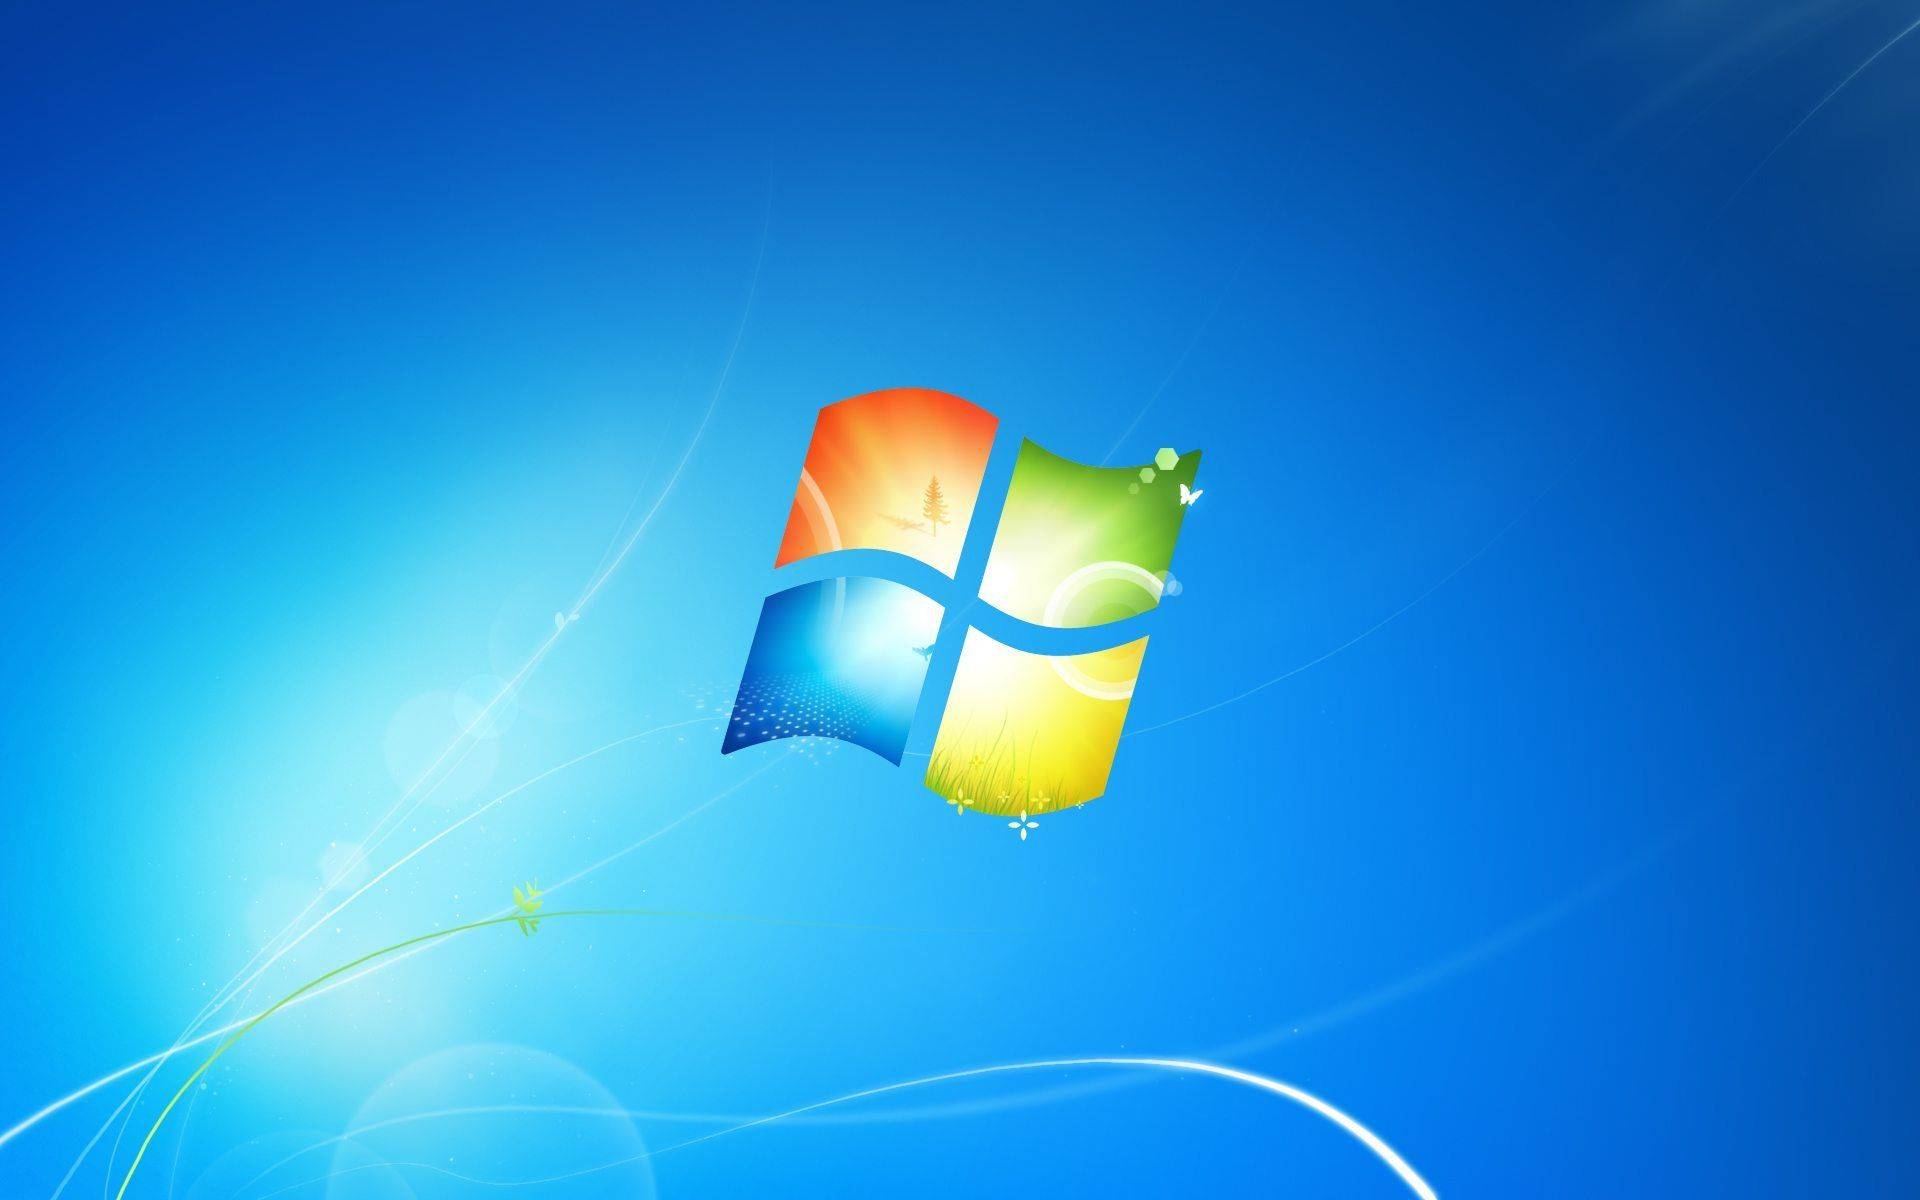 Windows 7 Background, DeviantArt: \